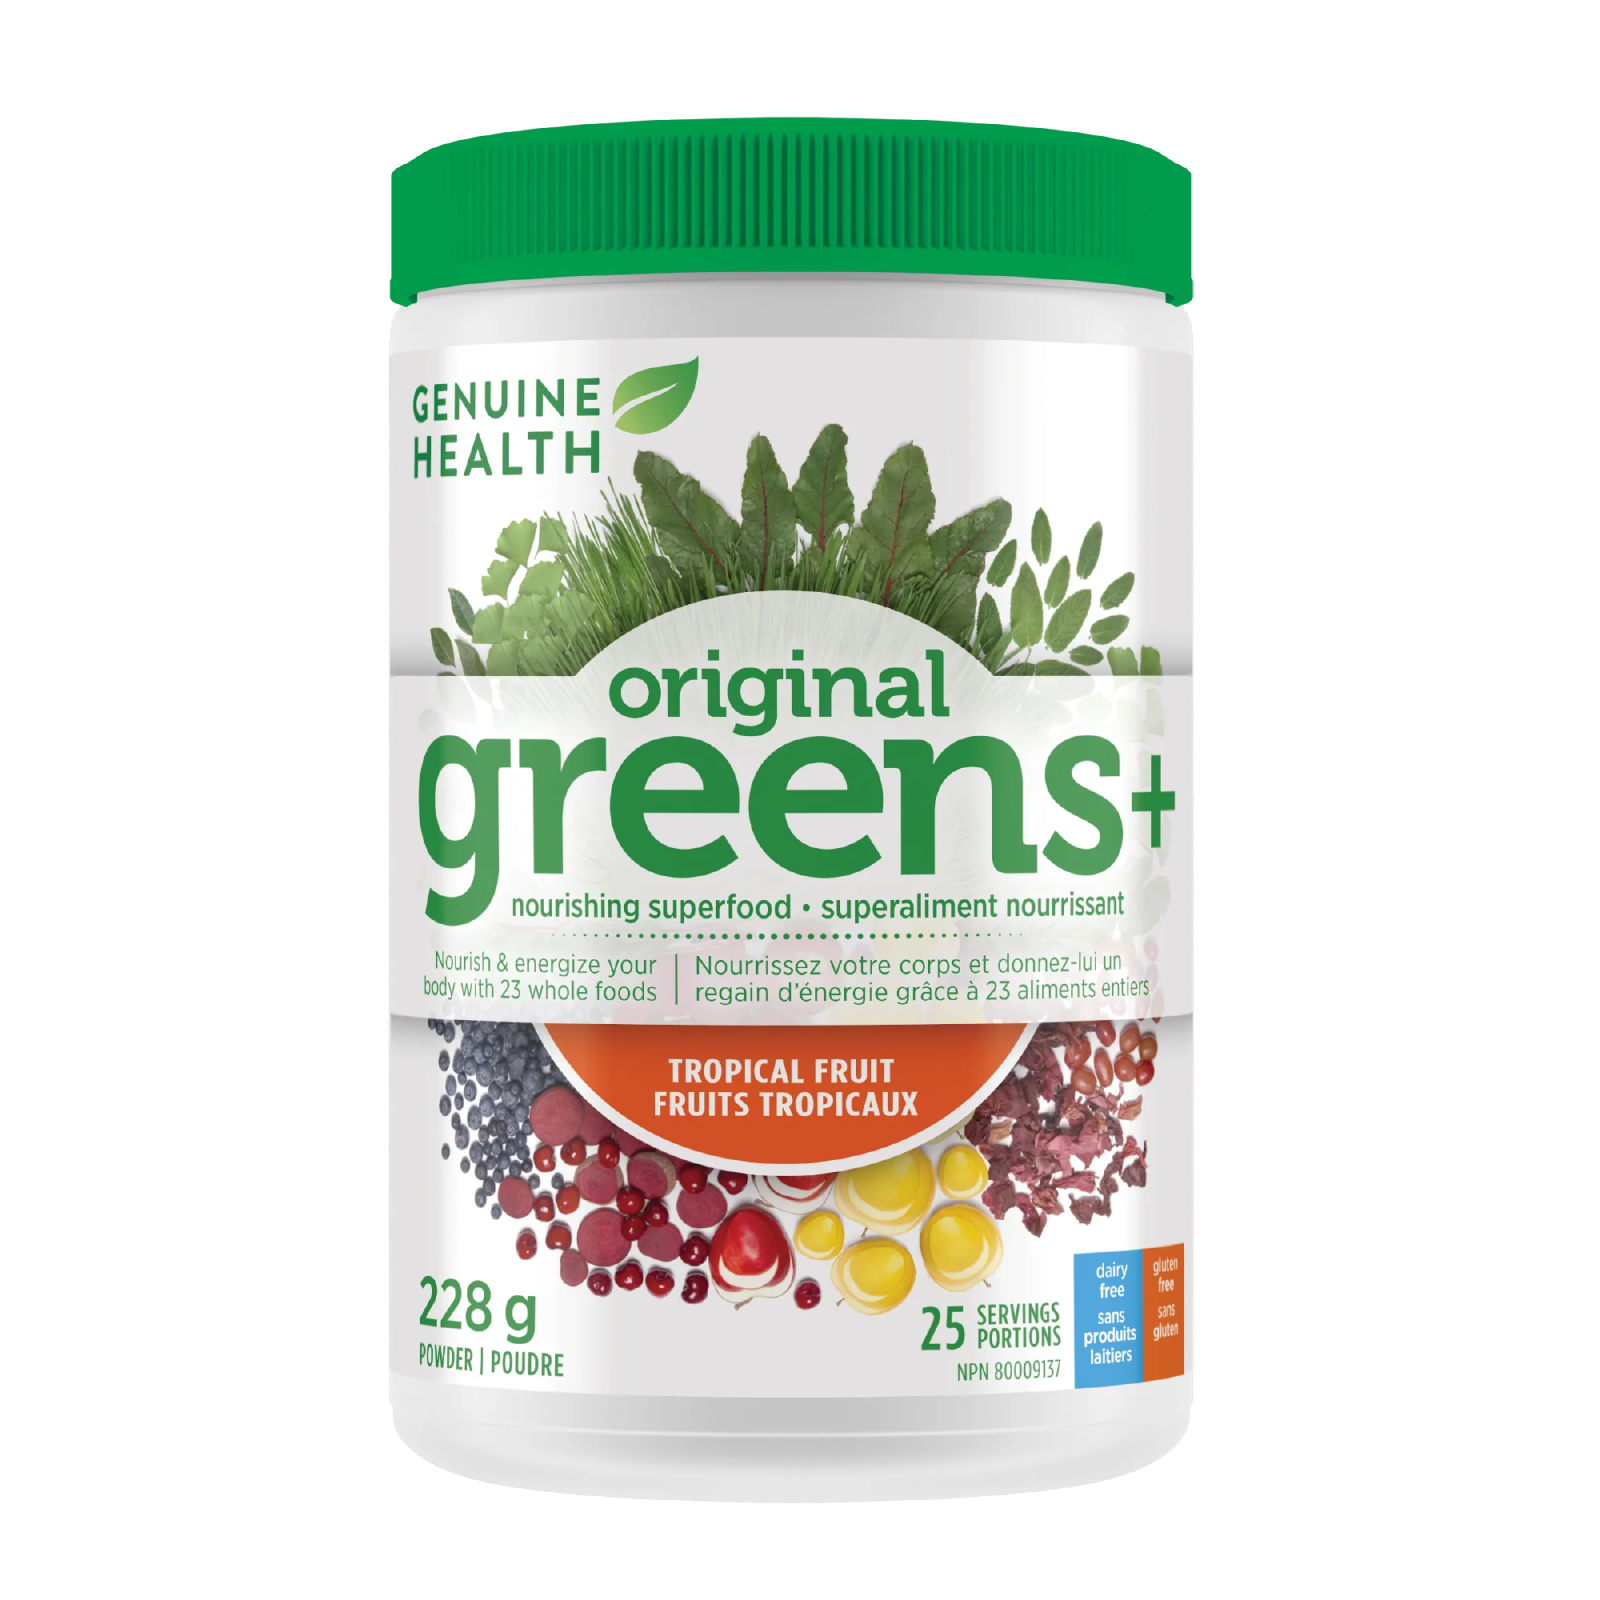 Genuine Health original greens+ tropical fruit (288 g)